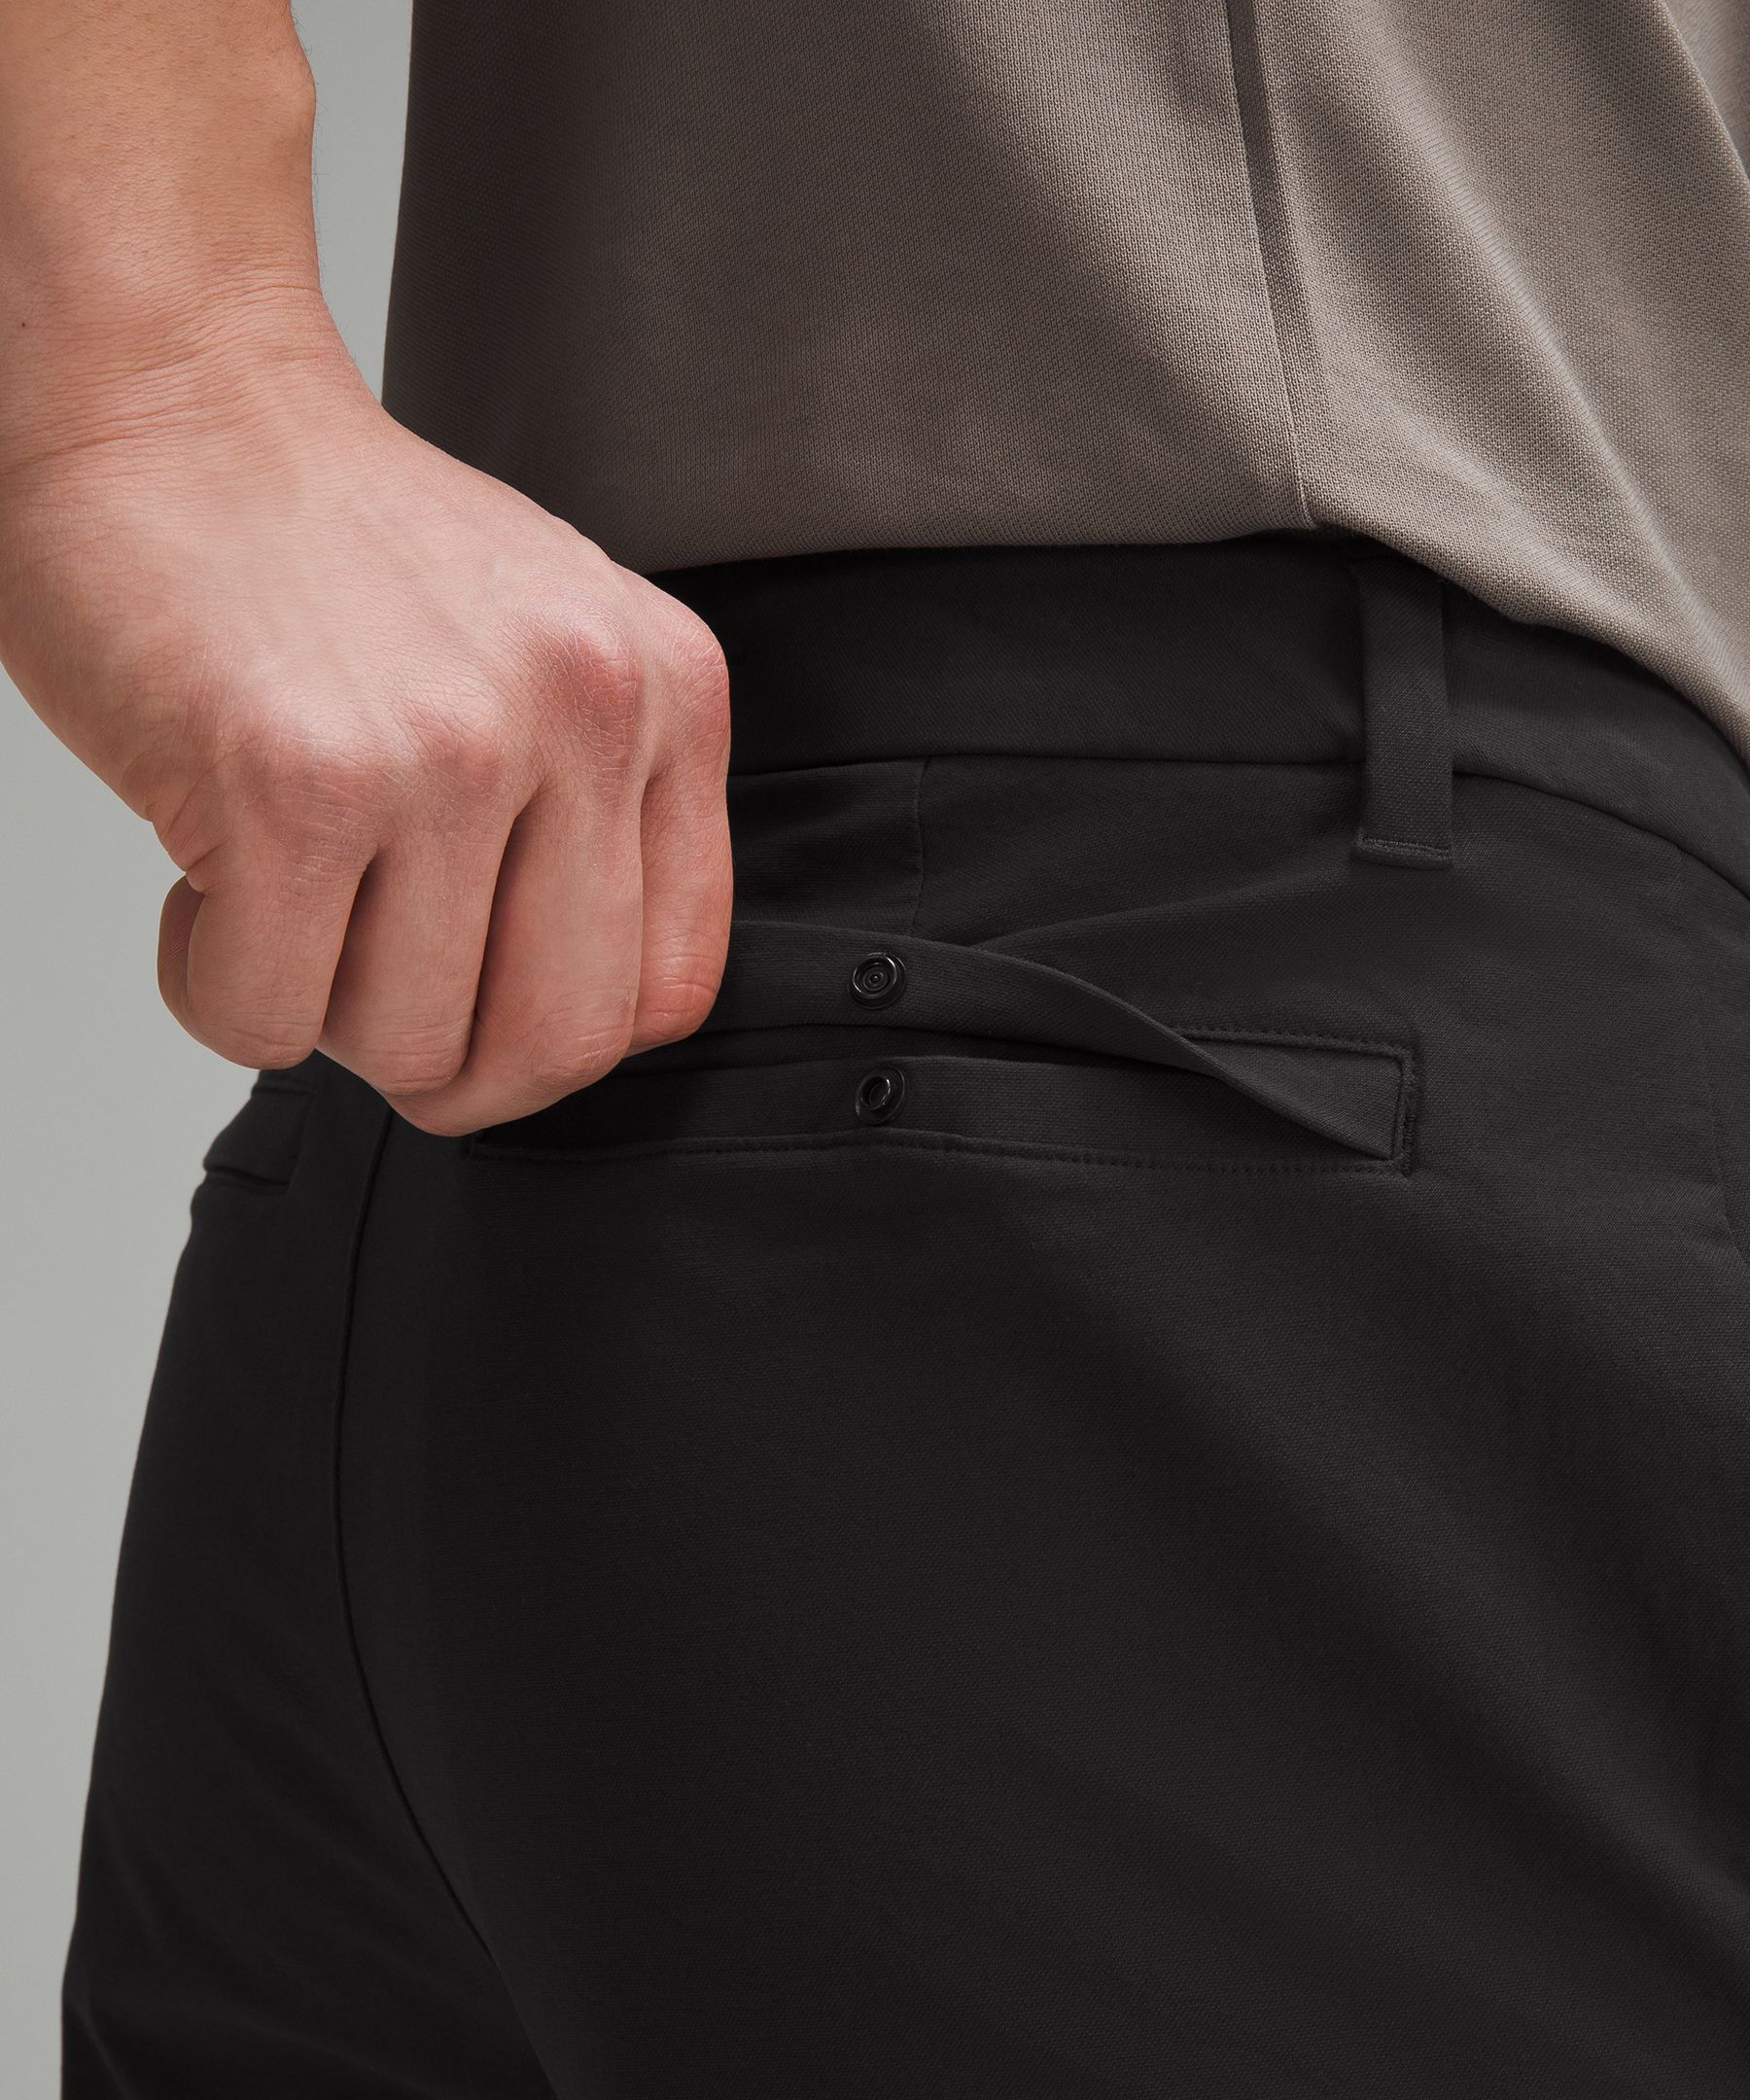 ABC Classic-Fit Trouser 32"L *Stretch Cotton VersaTwill | Men's Trousers